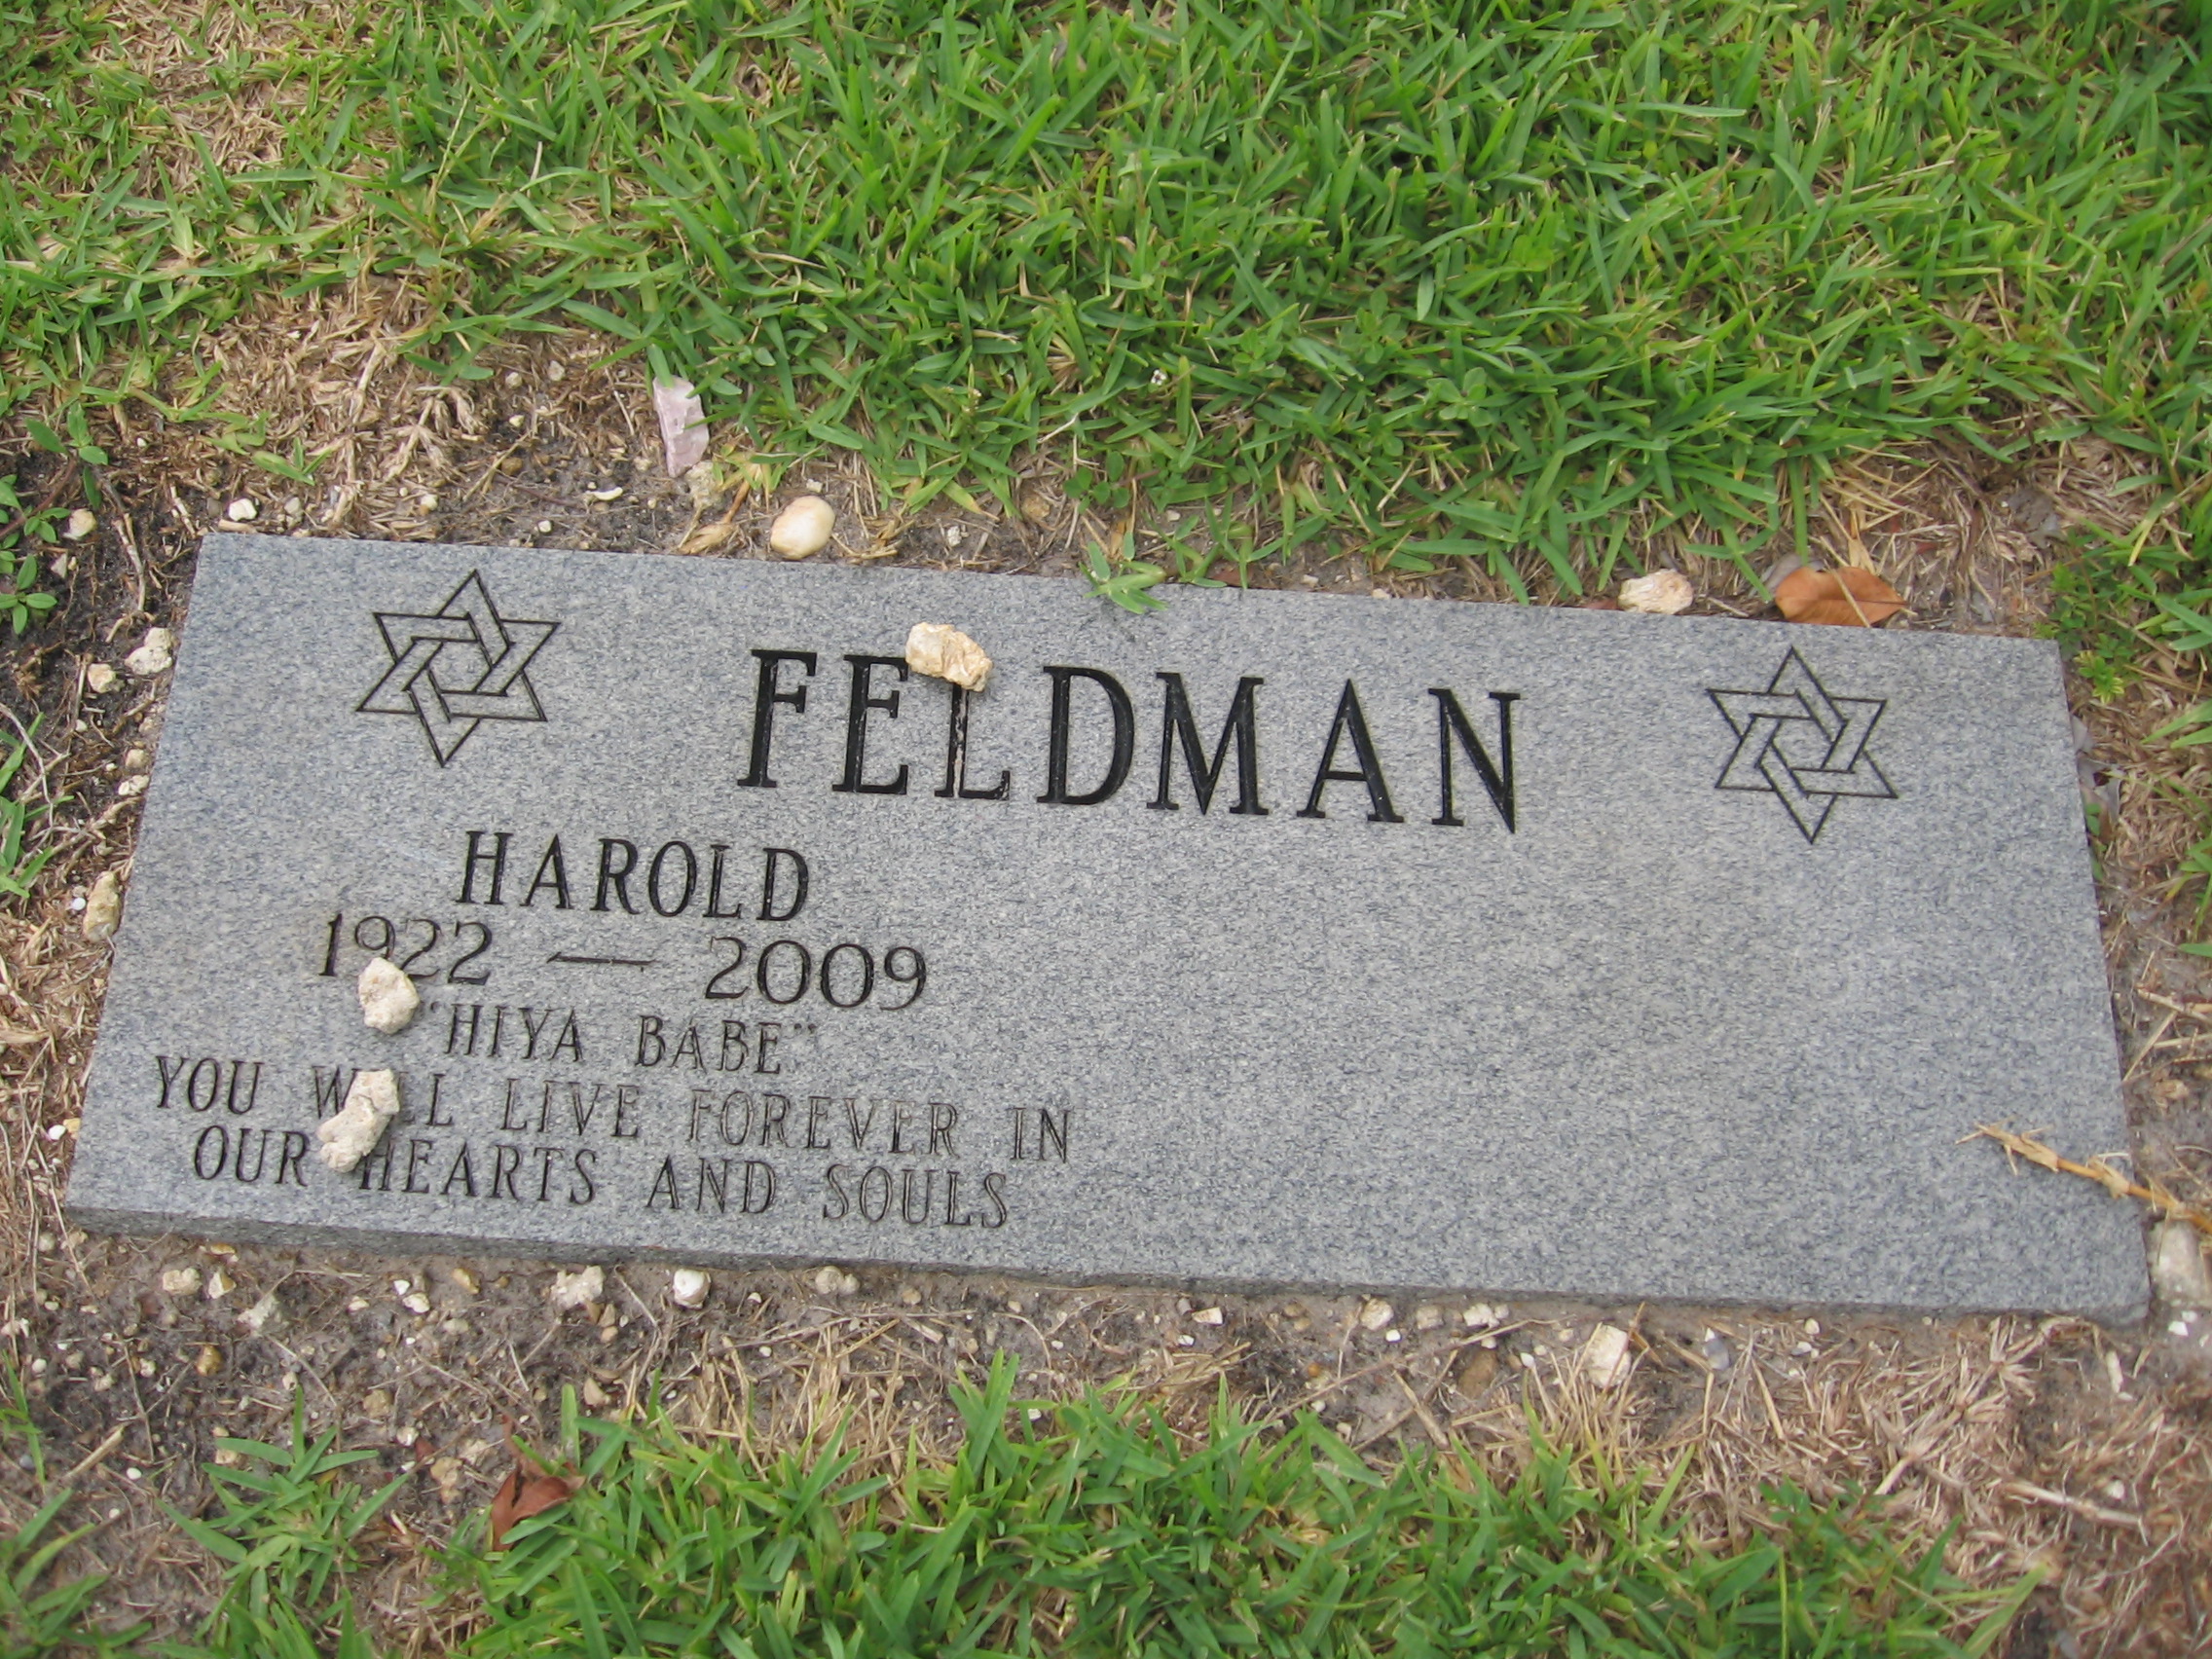 Harold Feldman